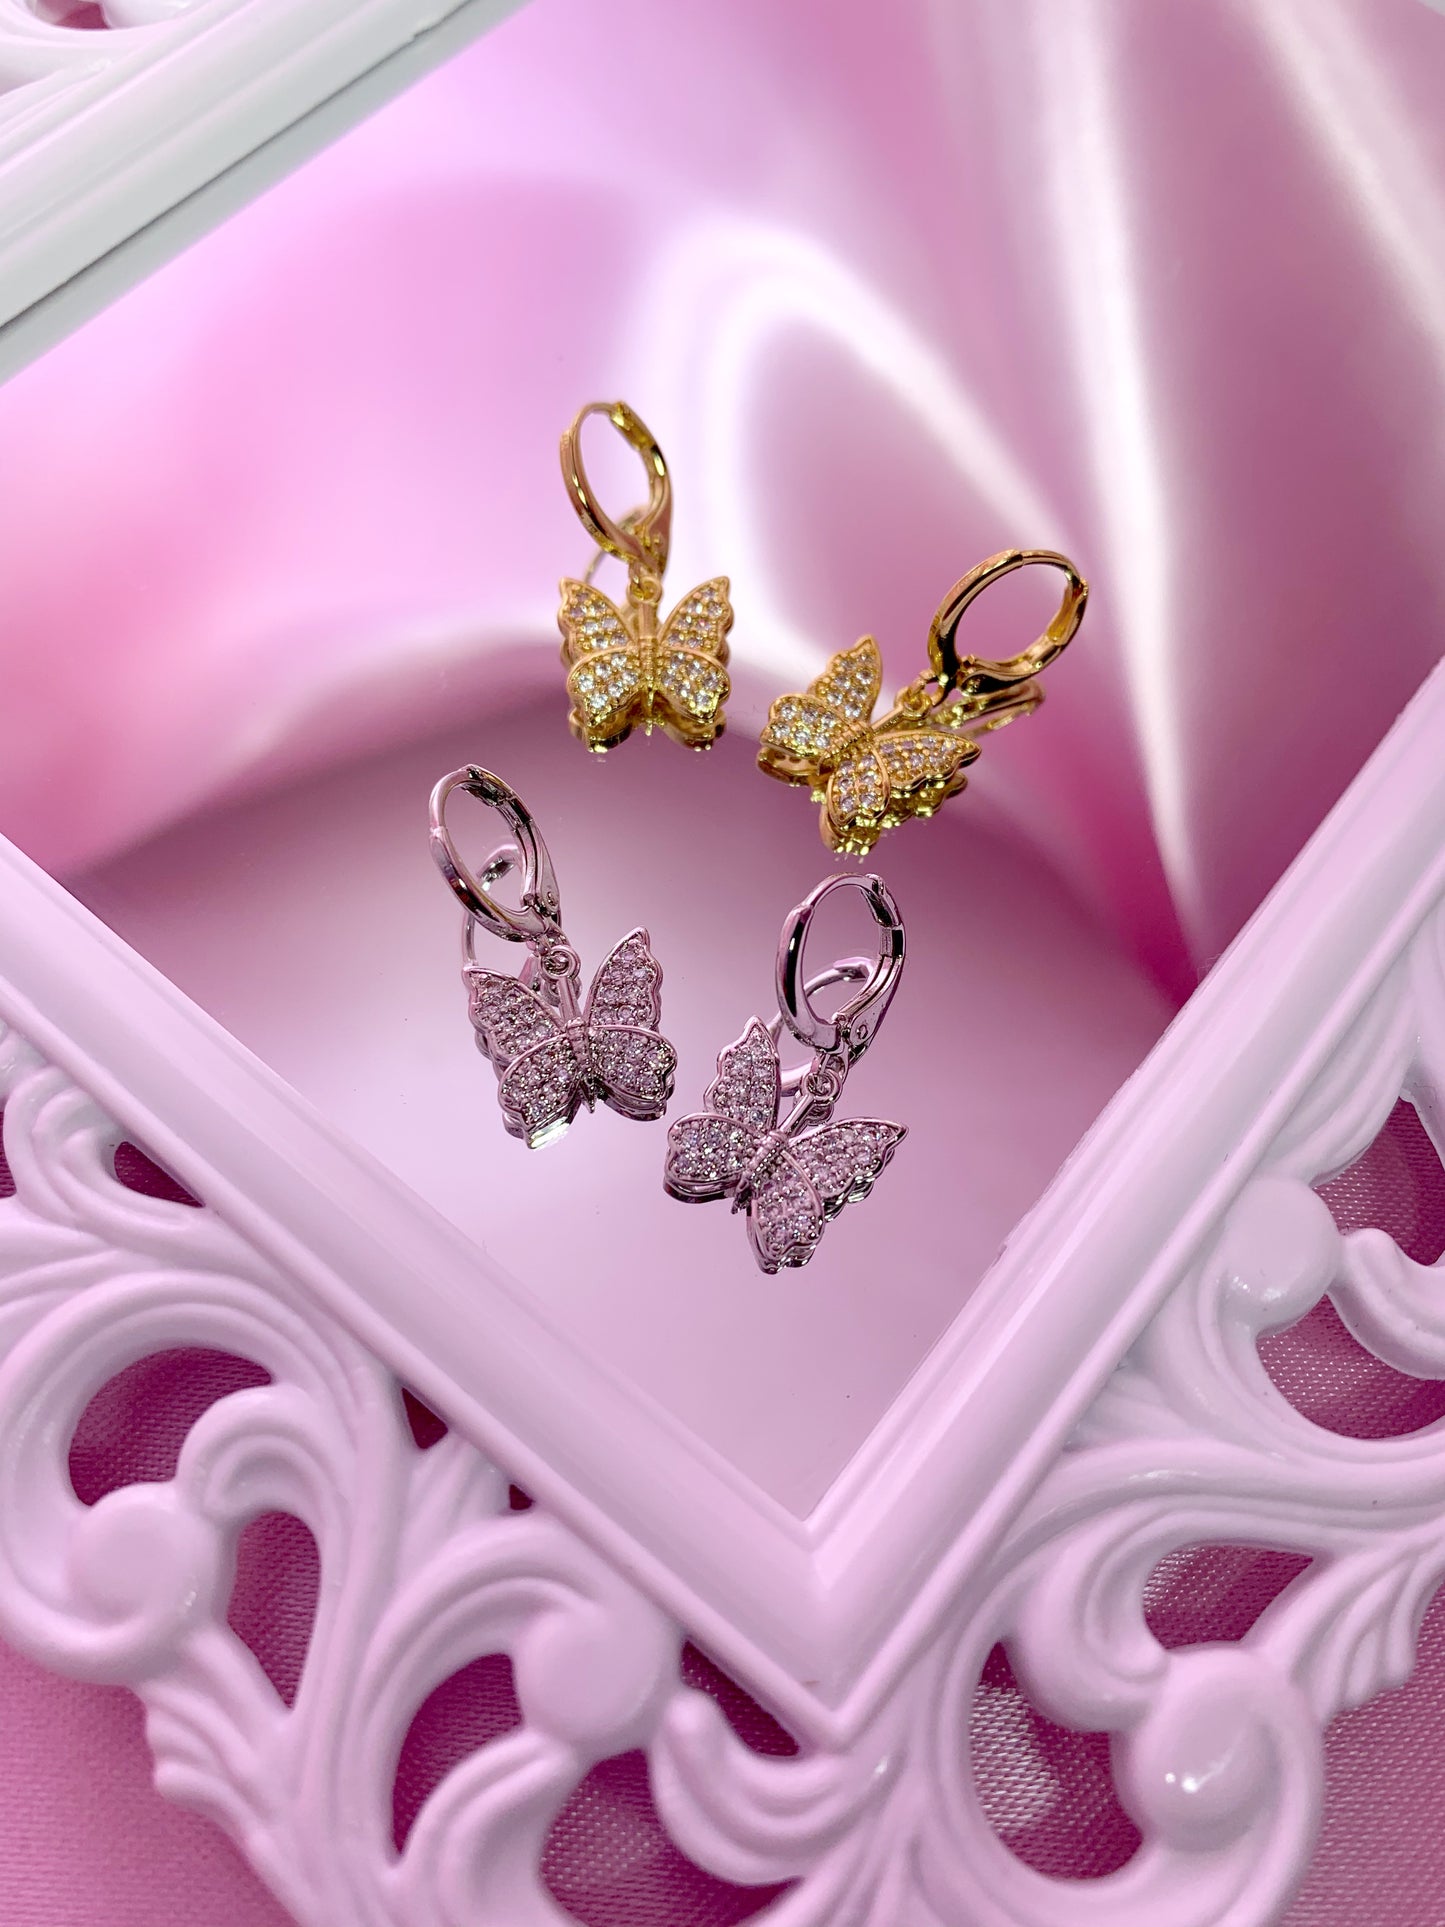 "Bling'd up" butterfly earrings